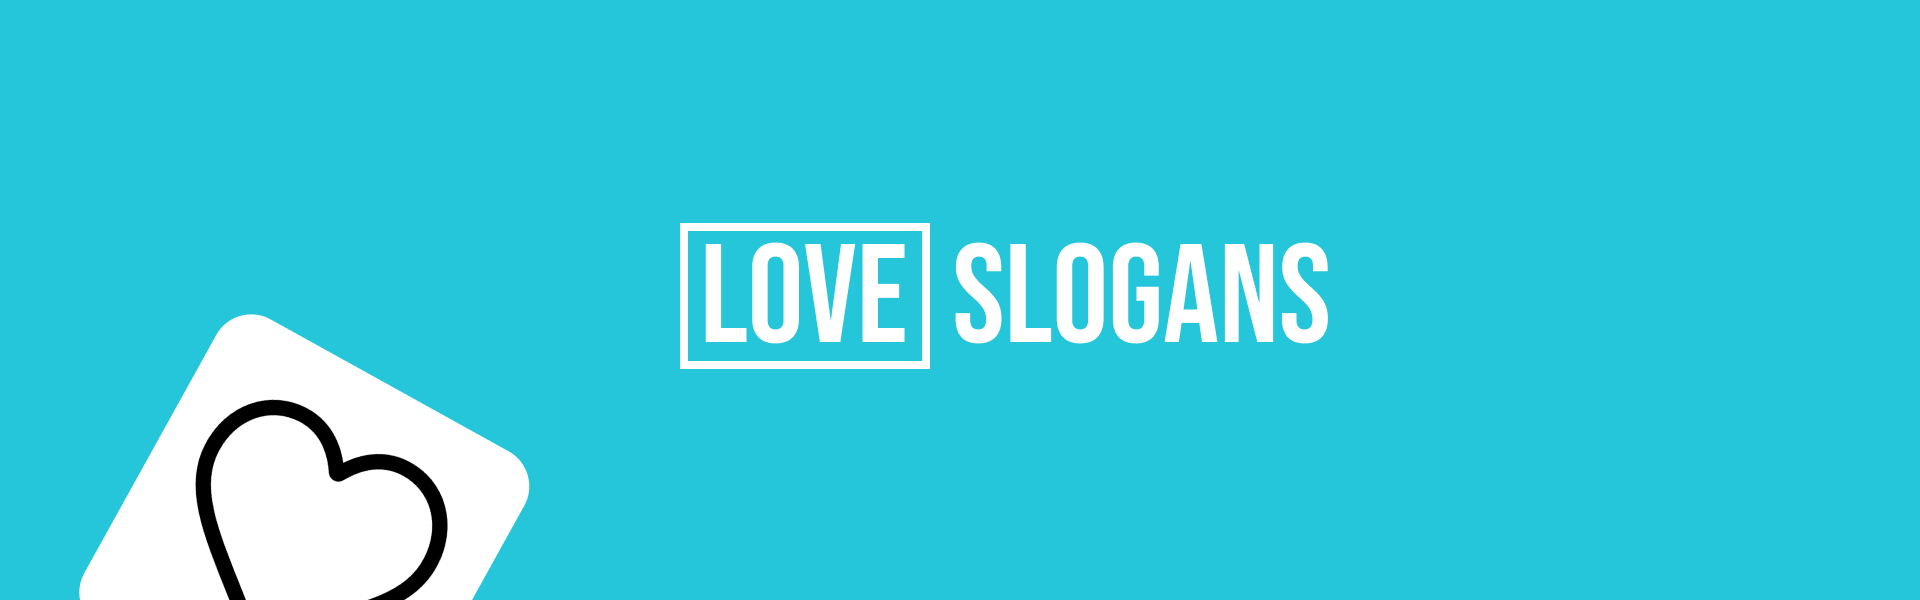 love-slogans-featured